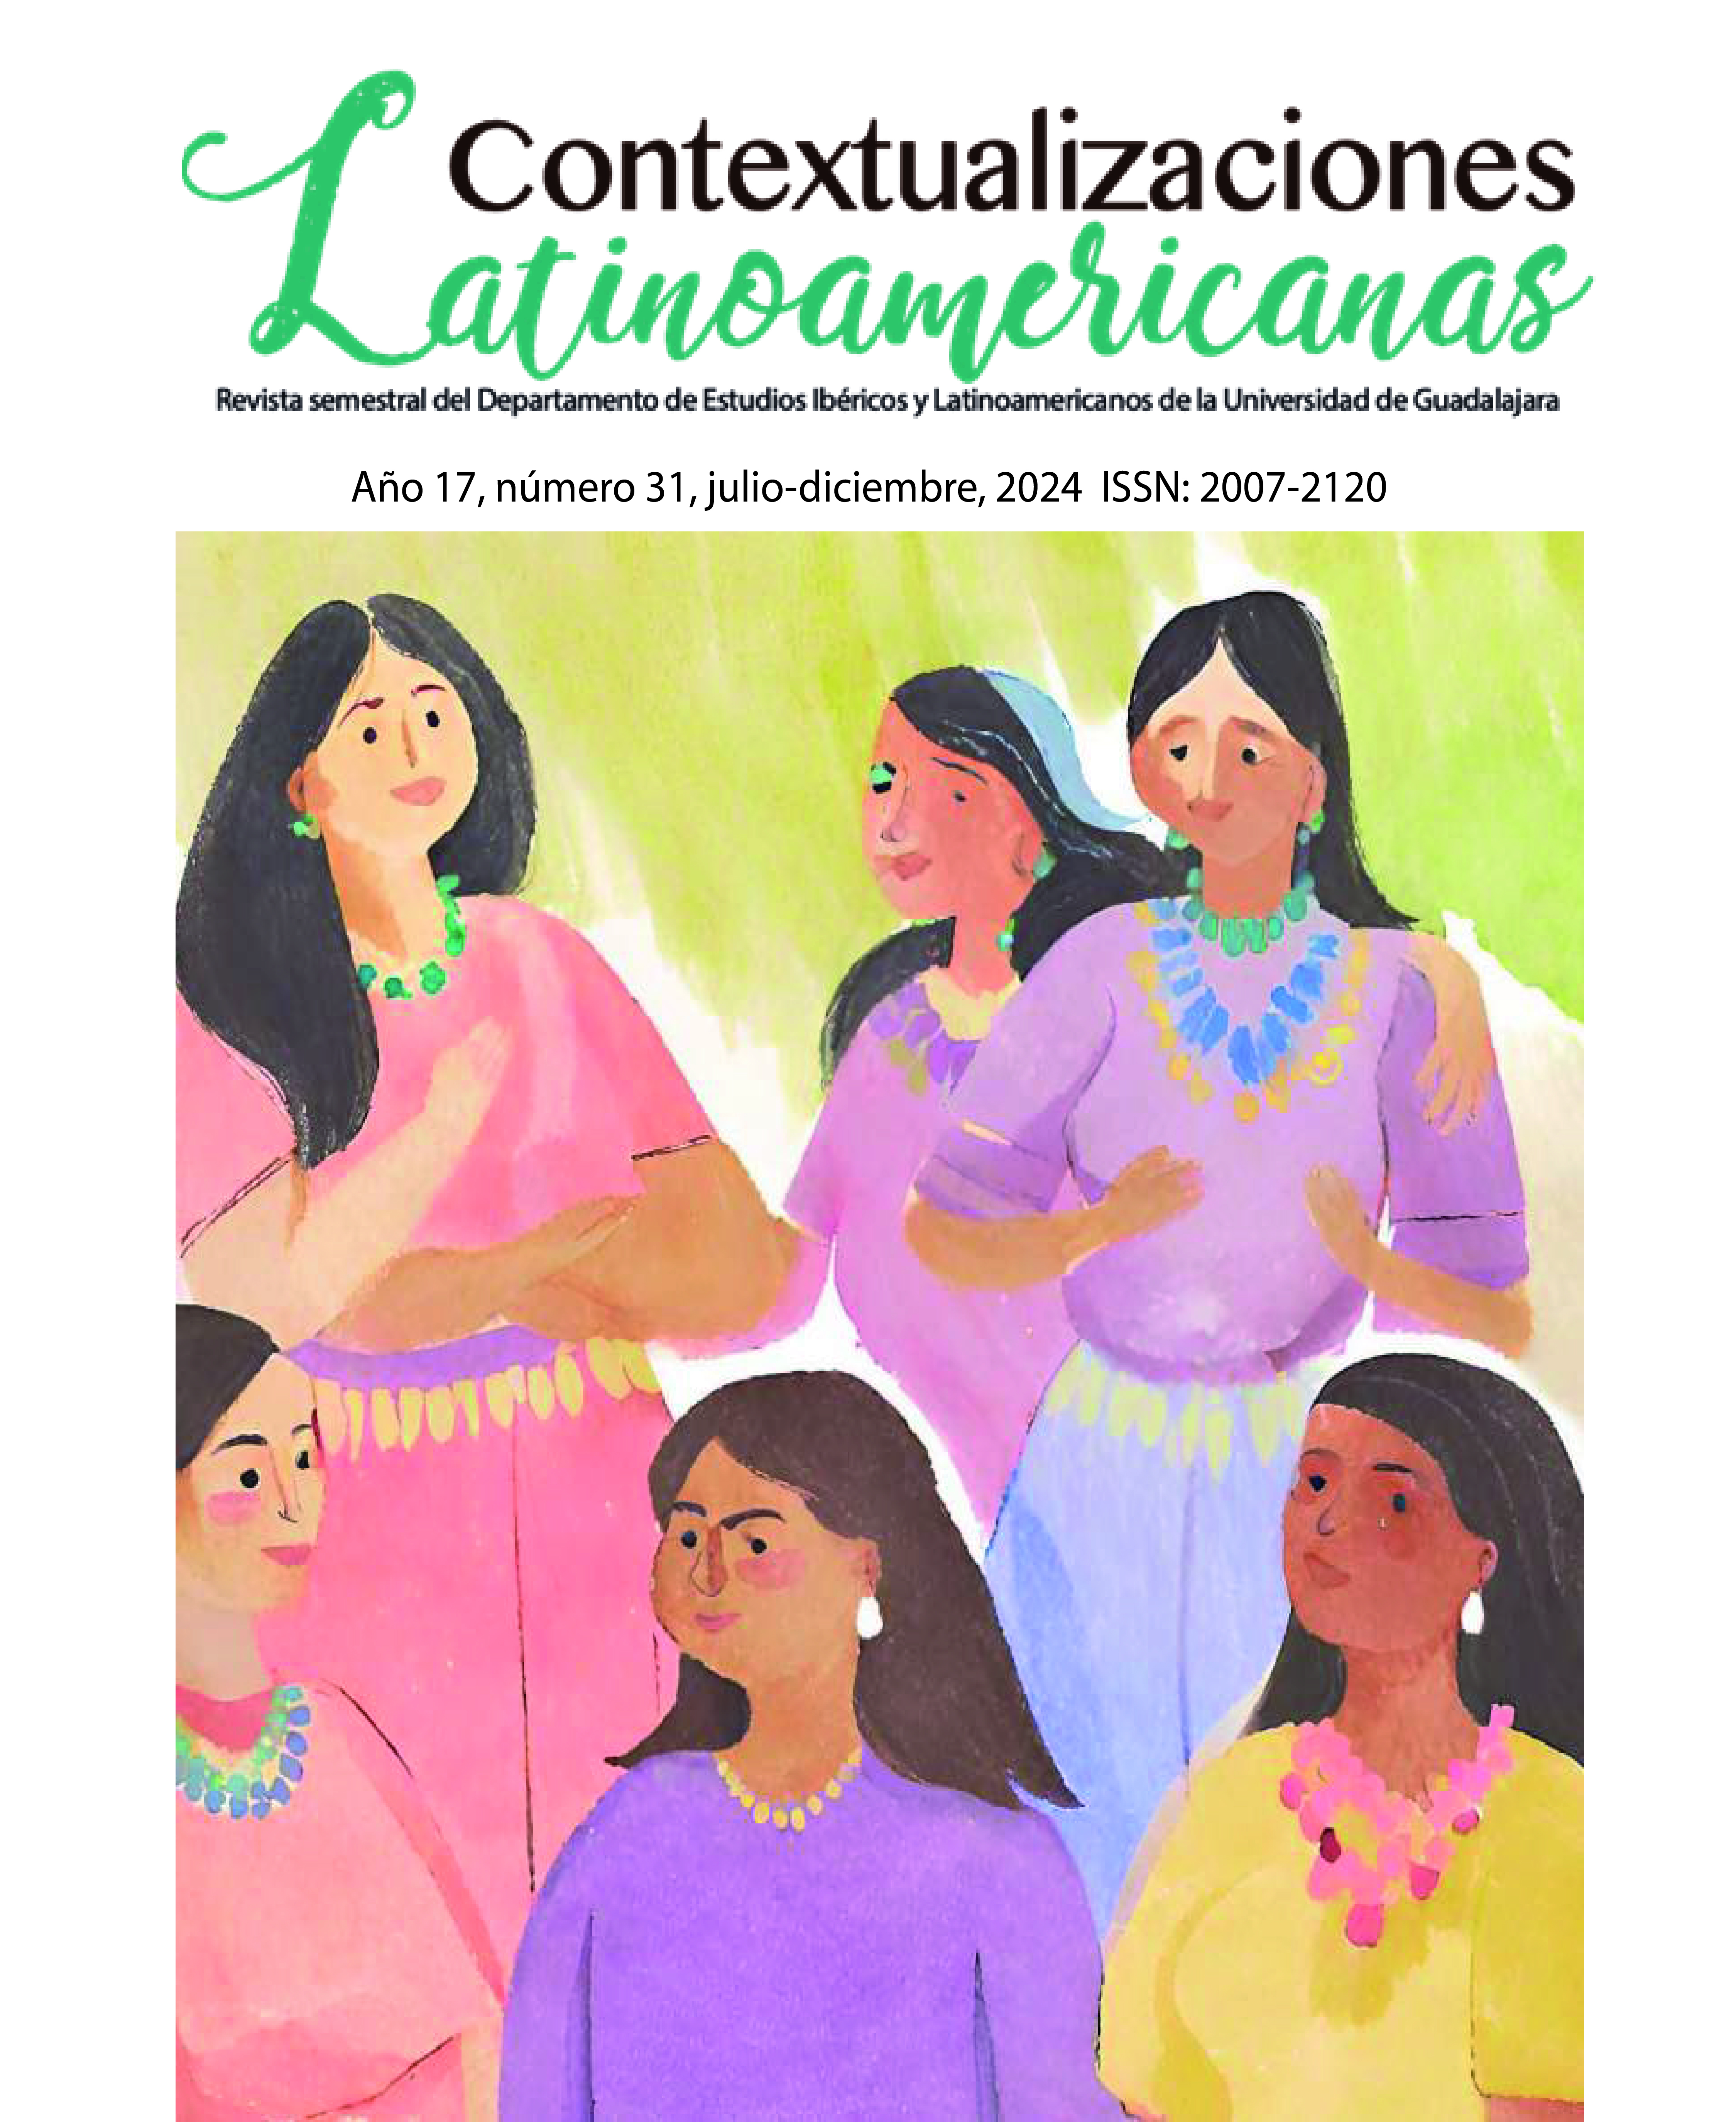 					View Vol. 2 No. 31 (17): Contextualizaciones Latinoamericanas Número 31 julio-diciembre 2024
				